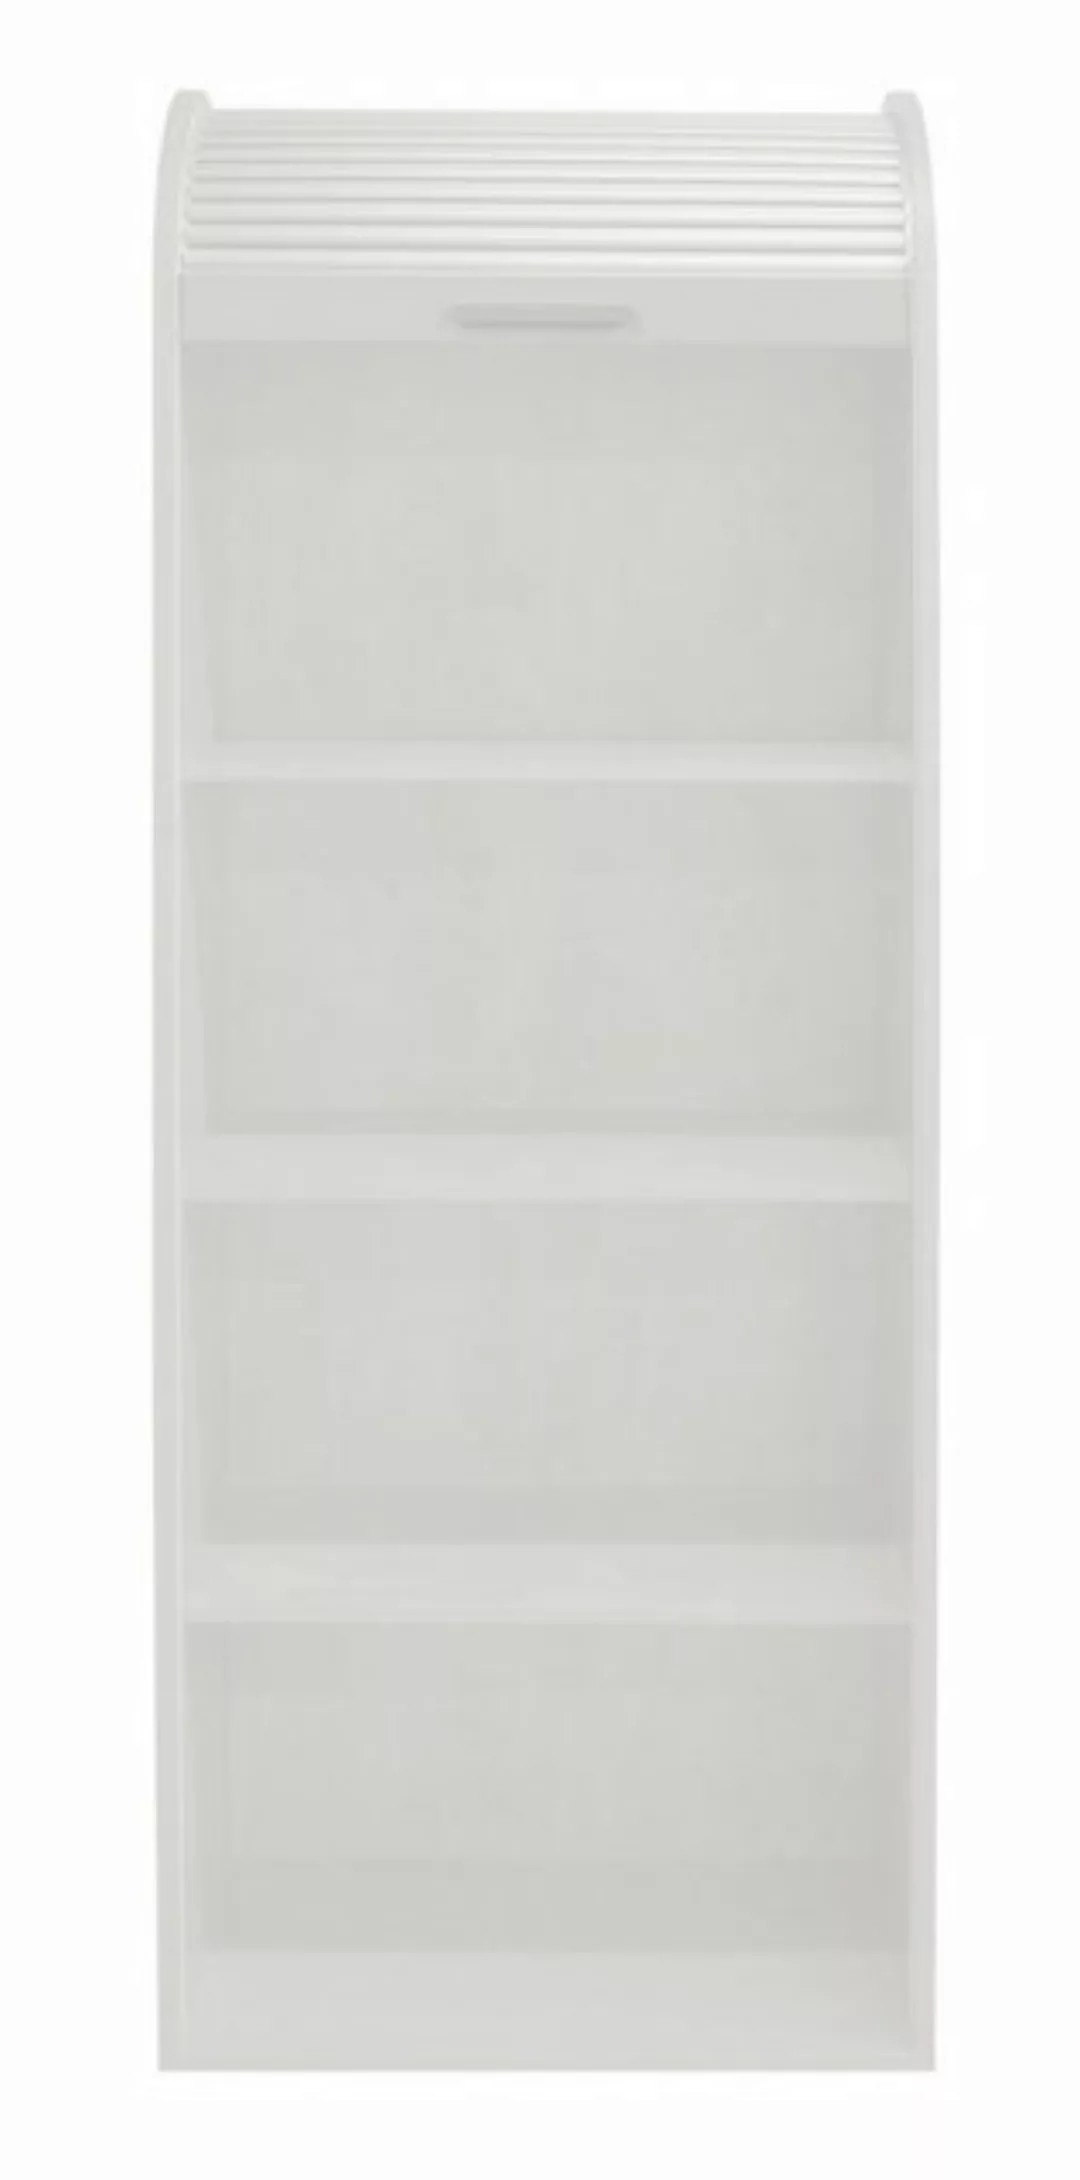 Mäusbacher Jalousieschrank in weiß matt lack / weiß mit 2 Einlegeböden (BxH günstig online kaufen